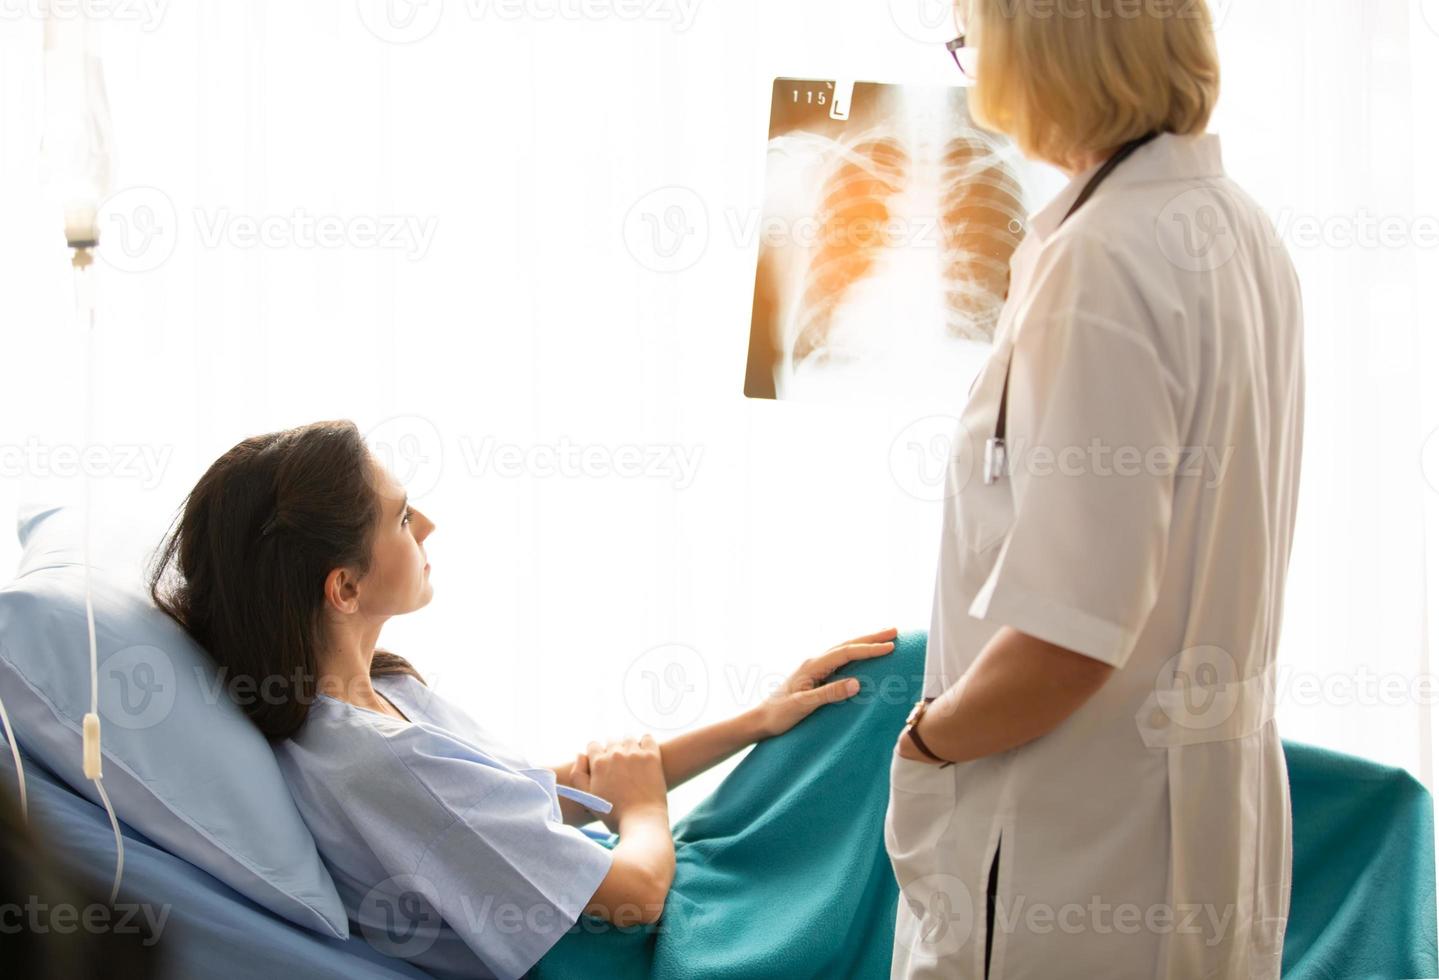 la dottoressa mostra l'immagine della pellicola a raggi X alla paziente e le spiega. foto